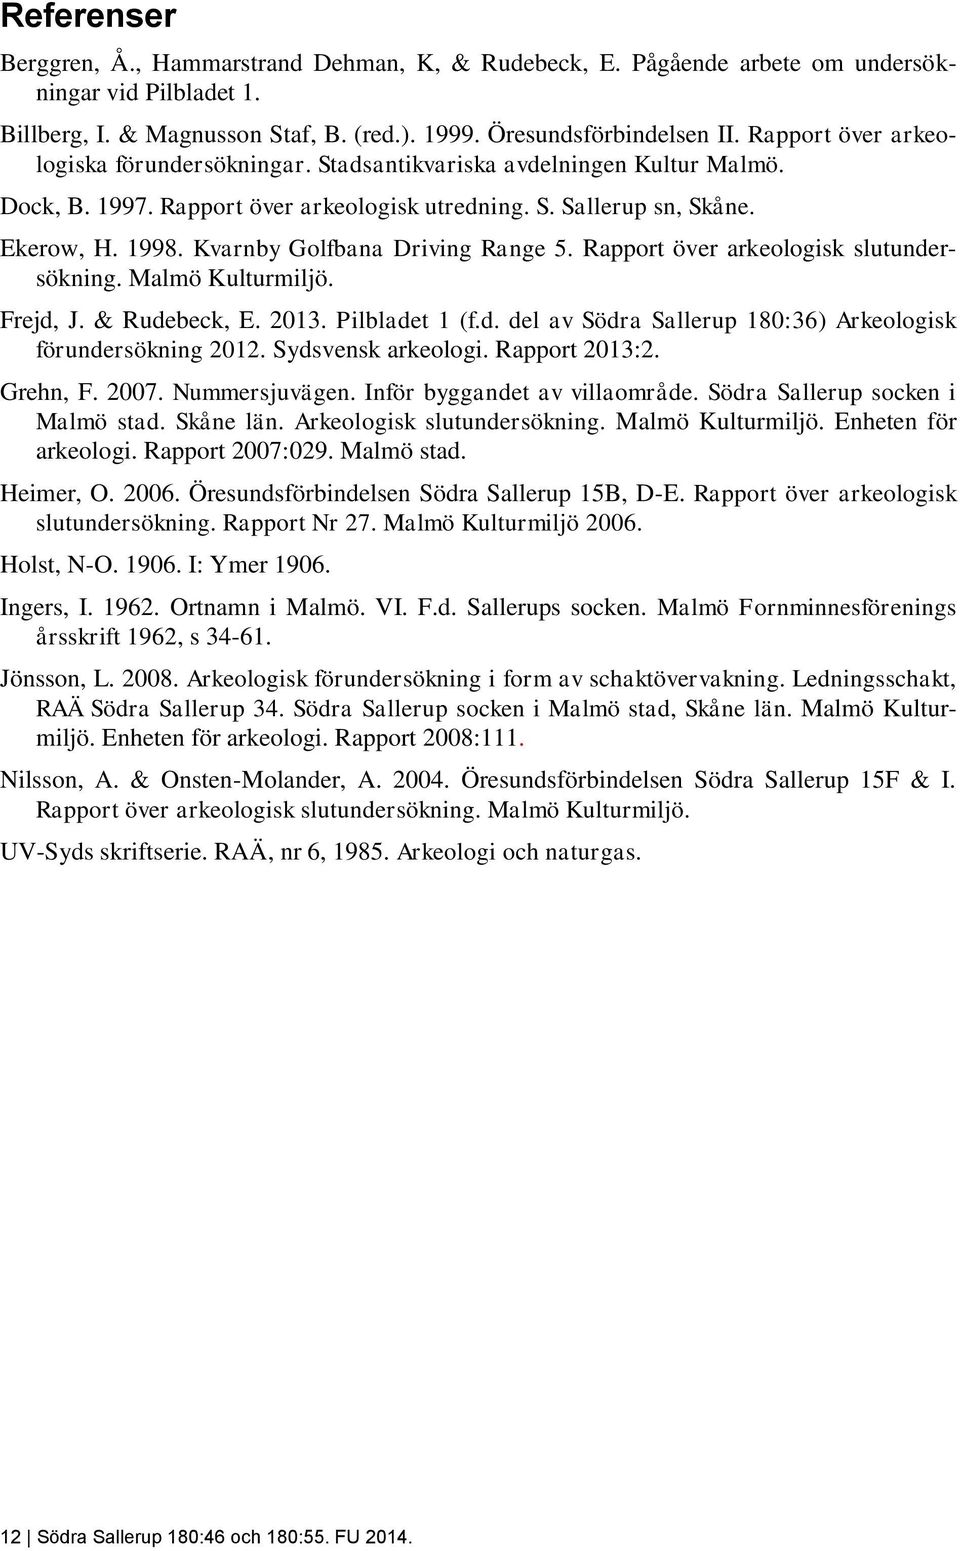 Kvarnby Golfbana Driving Range 5. Rapport över arkeologisk slutundersökning. Malmö Kulturmiljö. Frejd, J. & Rudebeck, E. 2013. Pilbladet 1 (f.d. del av Södra Sallerup 180:36) Arkeologisk förundersökning 2012.